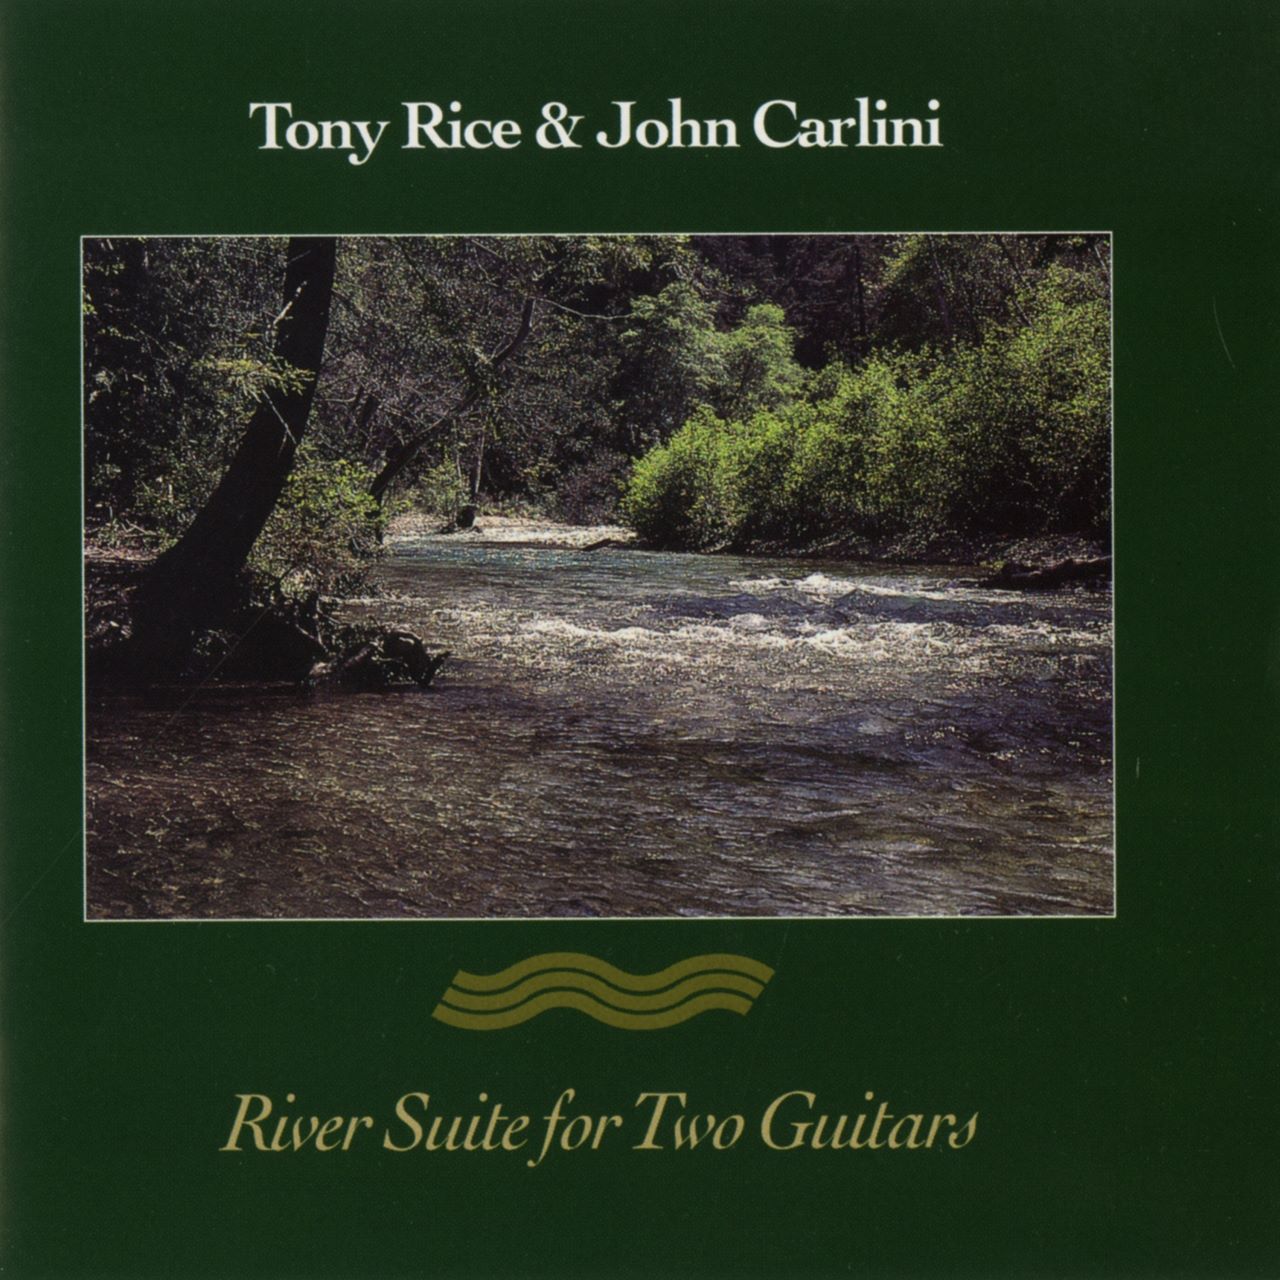 Recensione album River Suite For Two Guitars di Tony Rice & John Carlini a cura di Mariano De Simone per la rivista Country Store